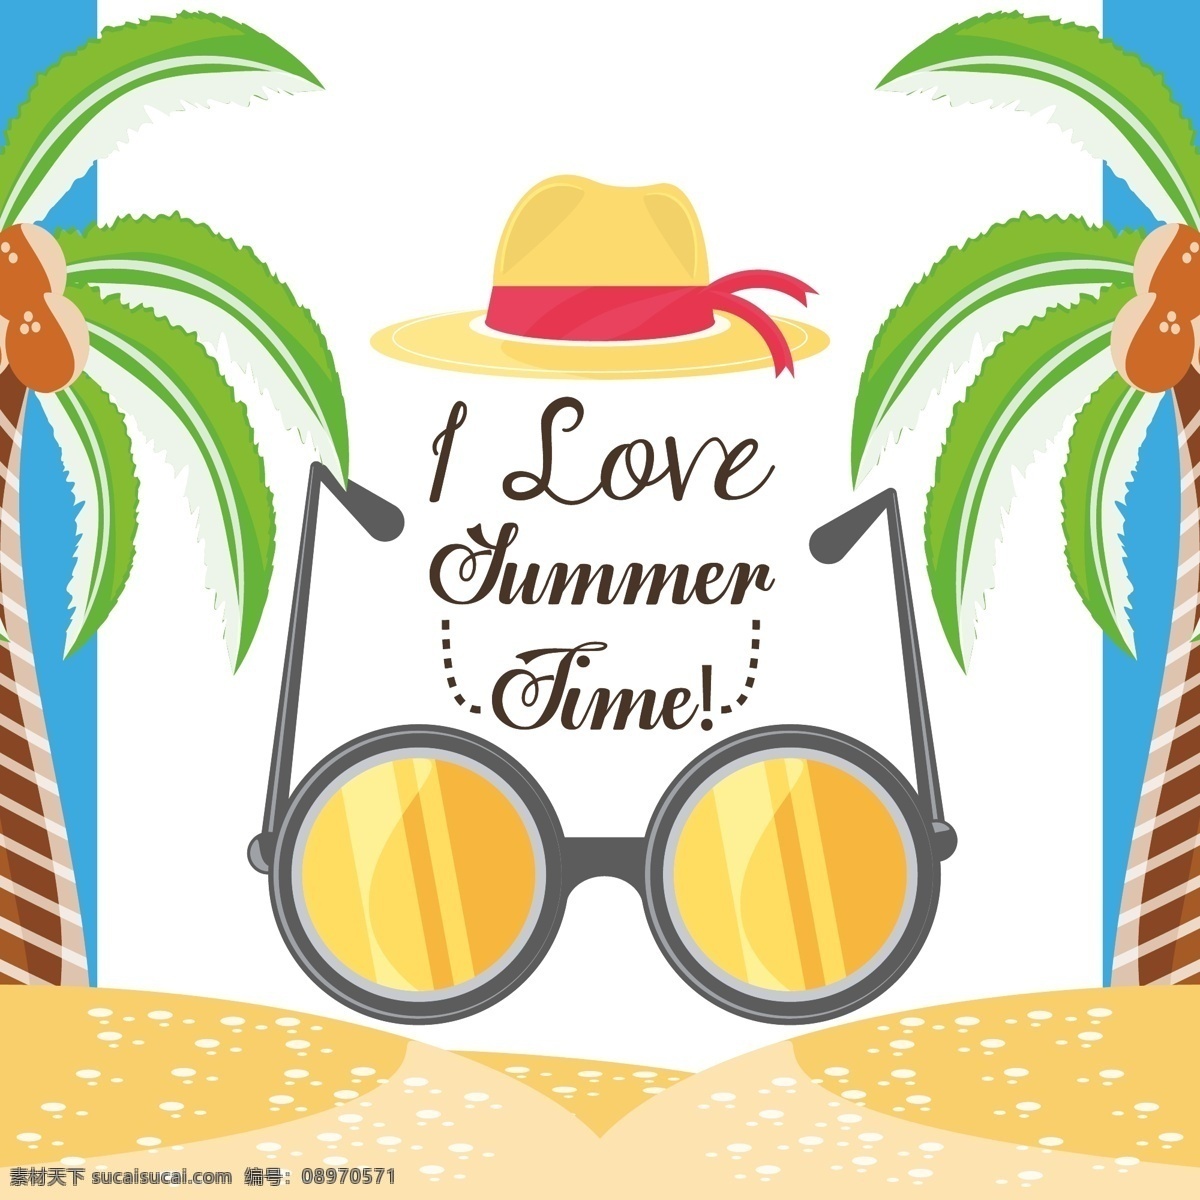 夏日海滩 你好夏天 夏日 阳光与海滩 贝壳 椰子树 旅行 海滩 凉爽 沙滩 卡通太阳伞 拖鞋 海星 球 可爱 风景